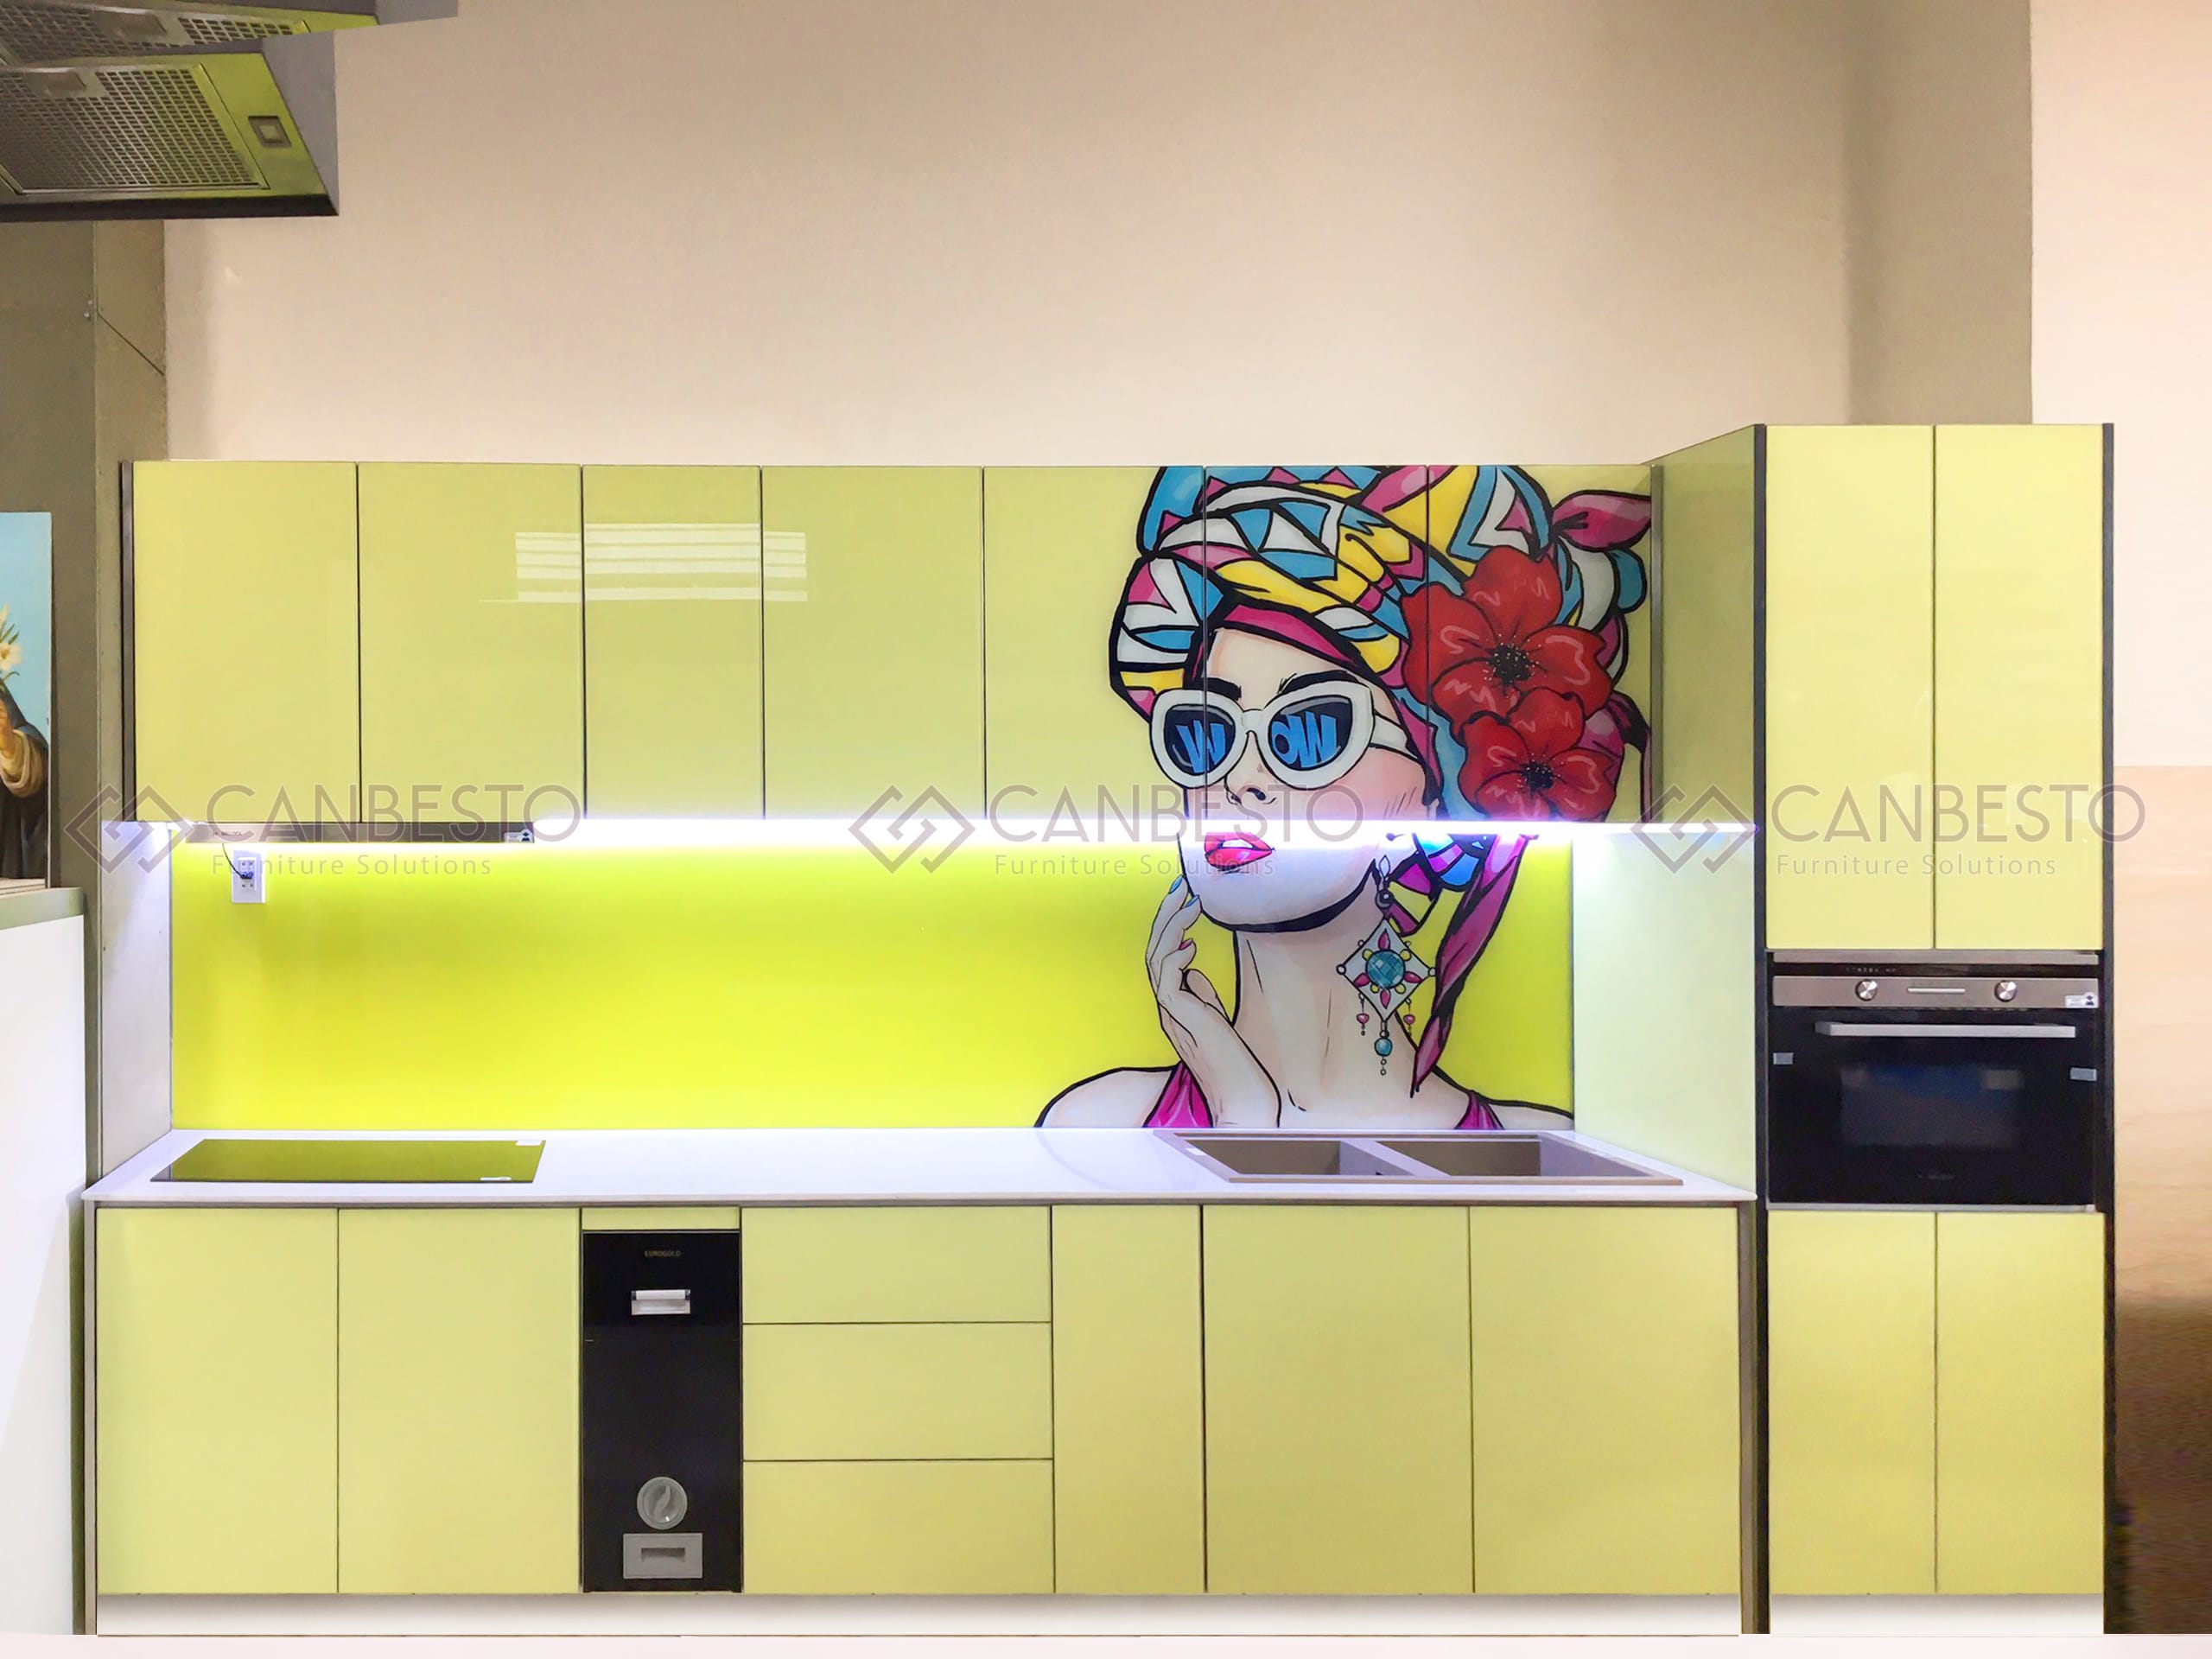 Canbesto: Tủ bếp nhôm kính, thiết kế nội thất tại Biên Hòa